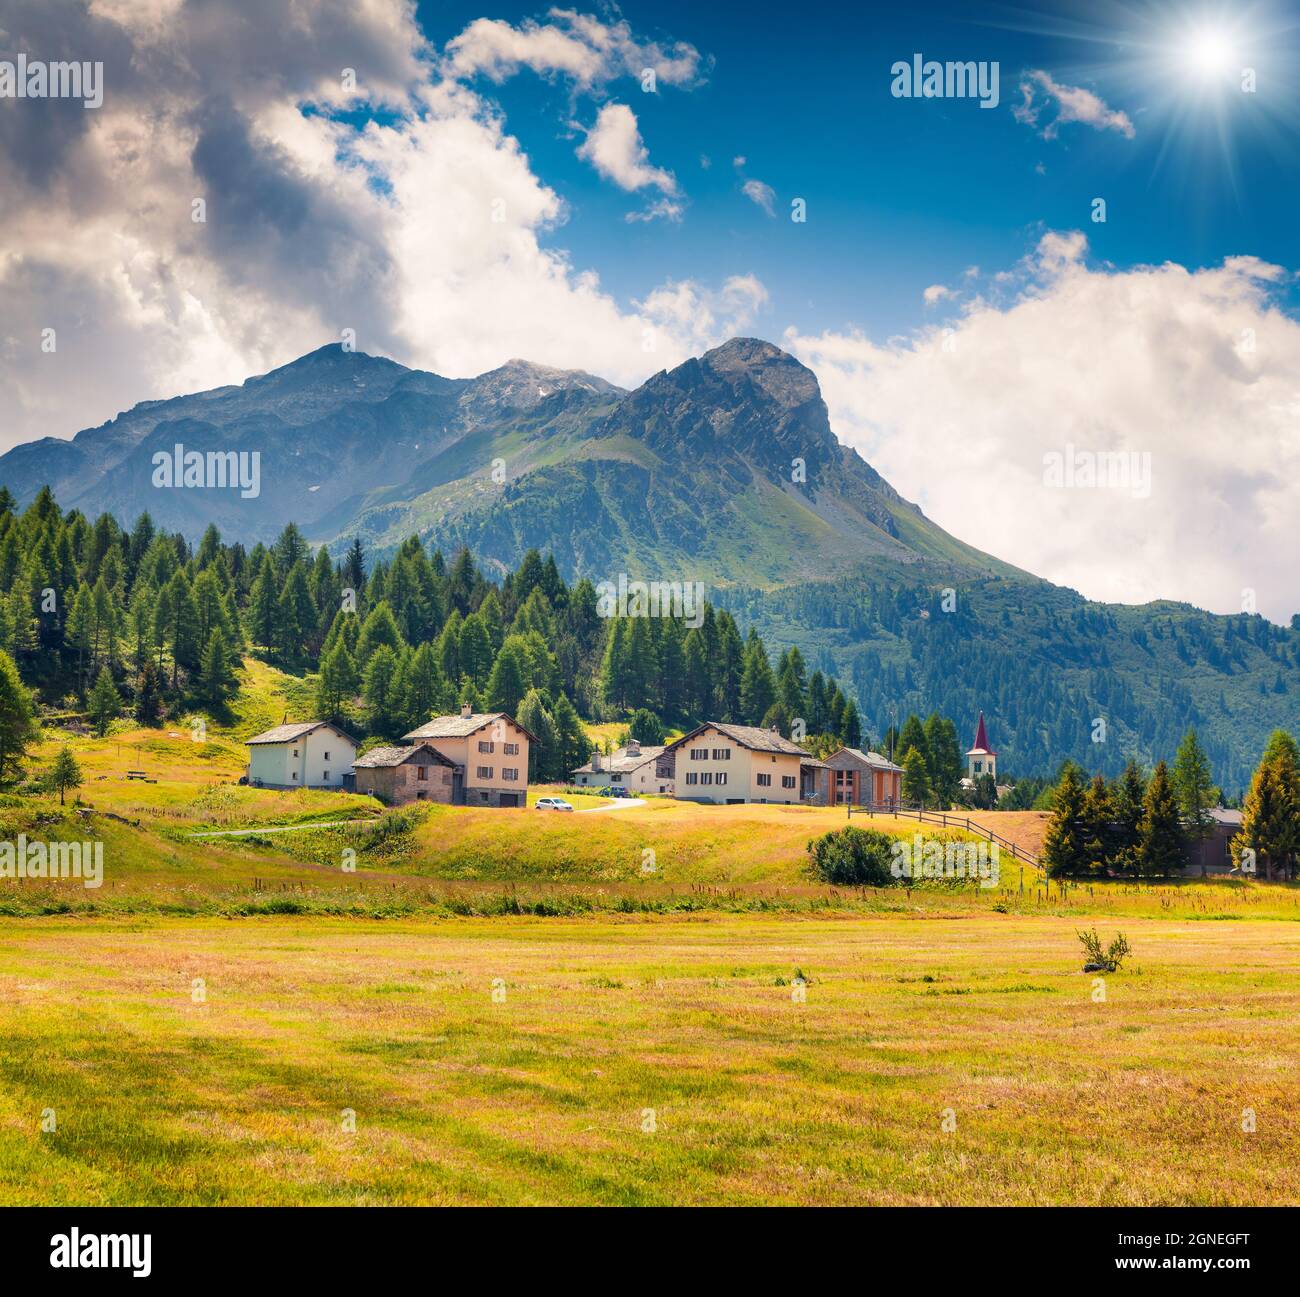 Pittoresca vista estiva dalla cima del passo Maloja. Colorata scena mattutina delle Alpi Svizzere, alta Engadina nel cantone dei Grigioni, Svizzera, Europ Foto Stock